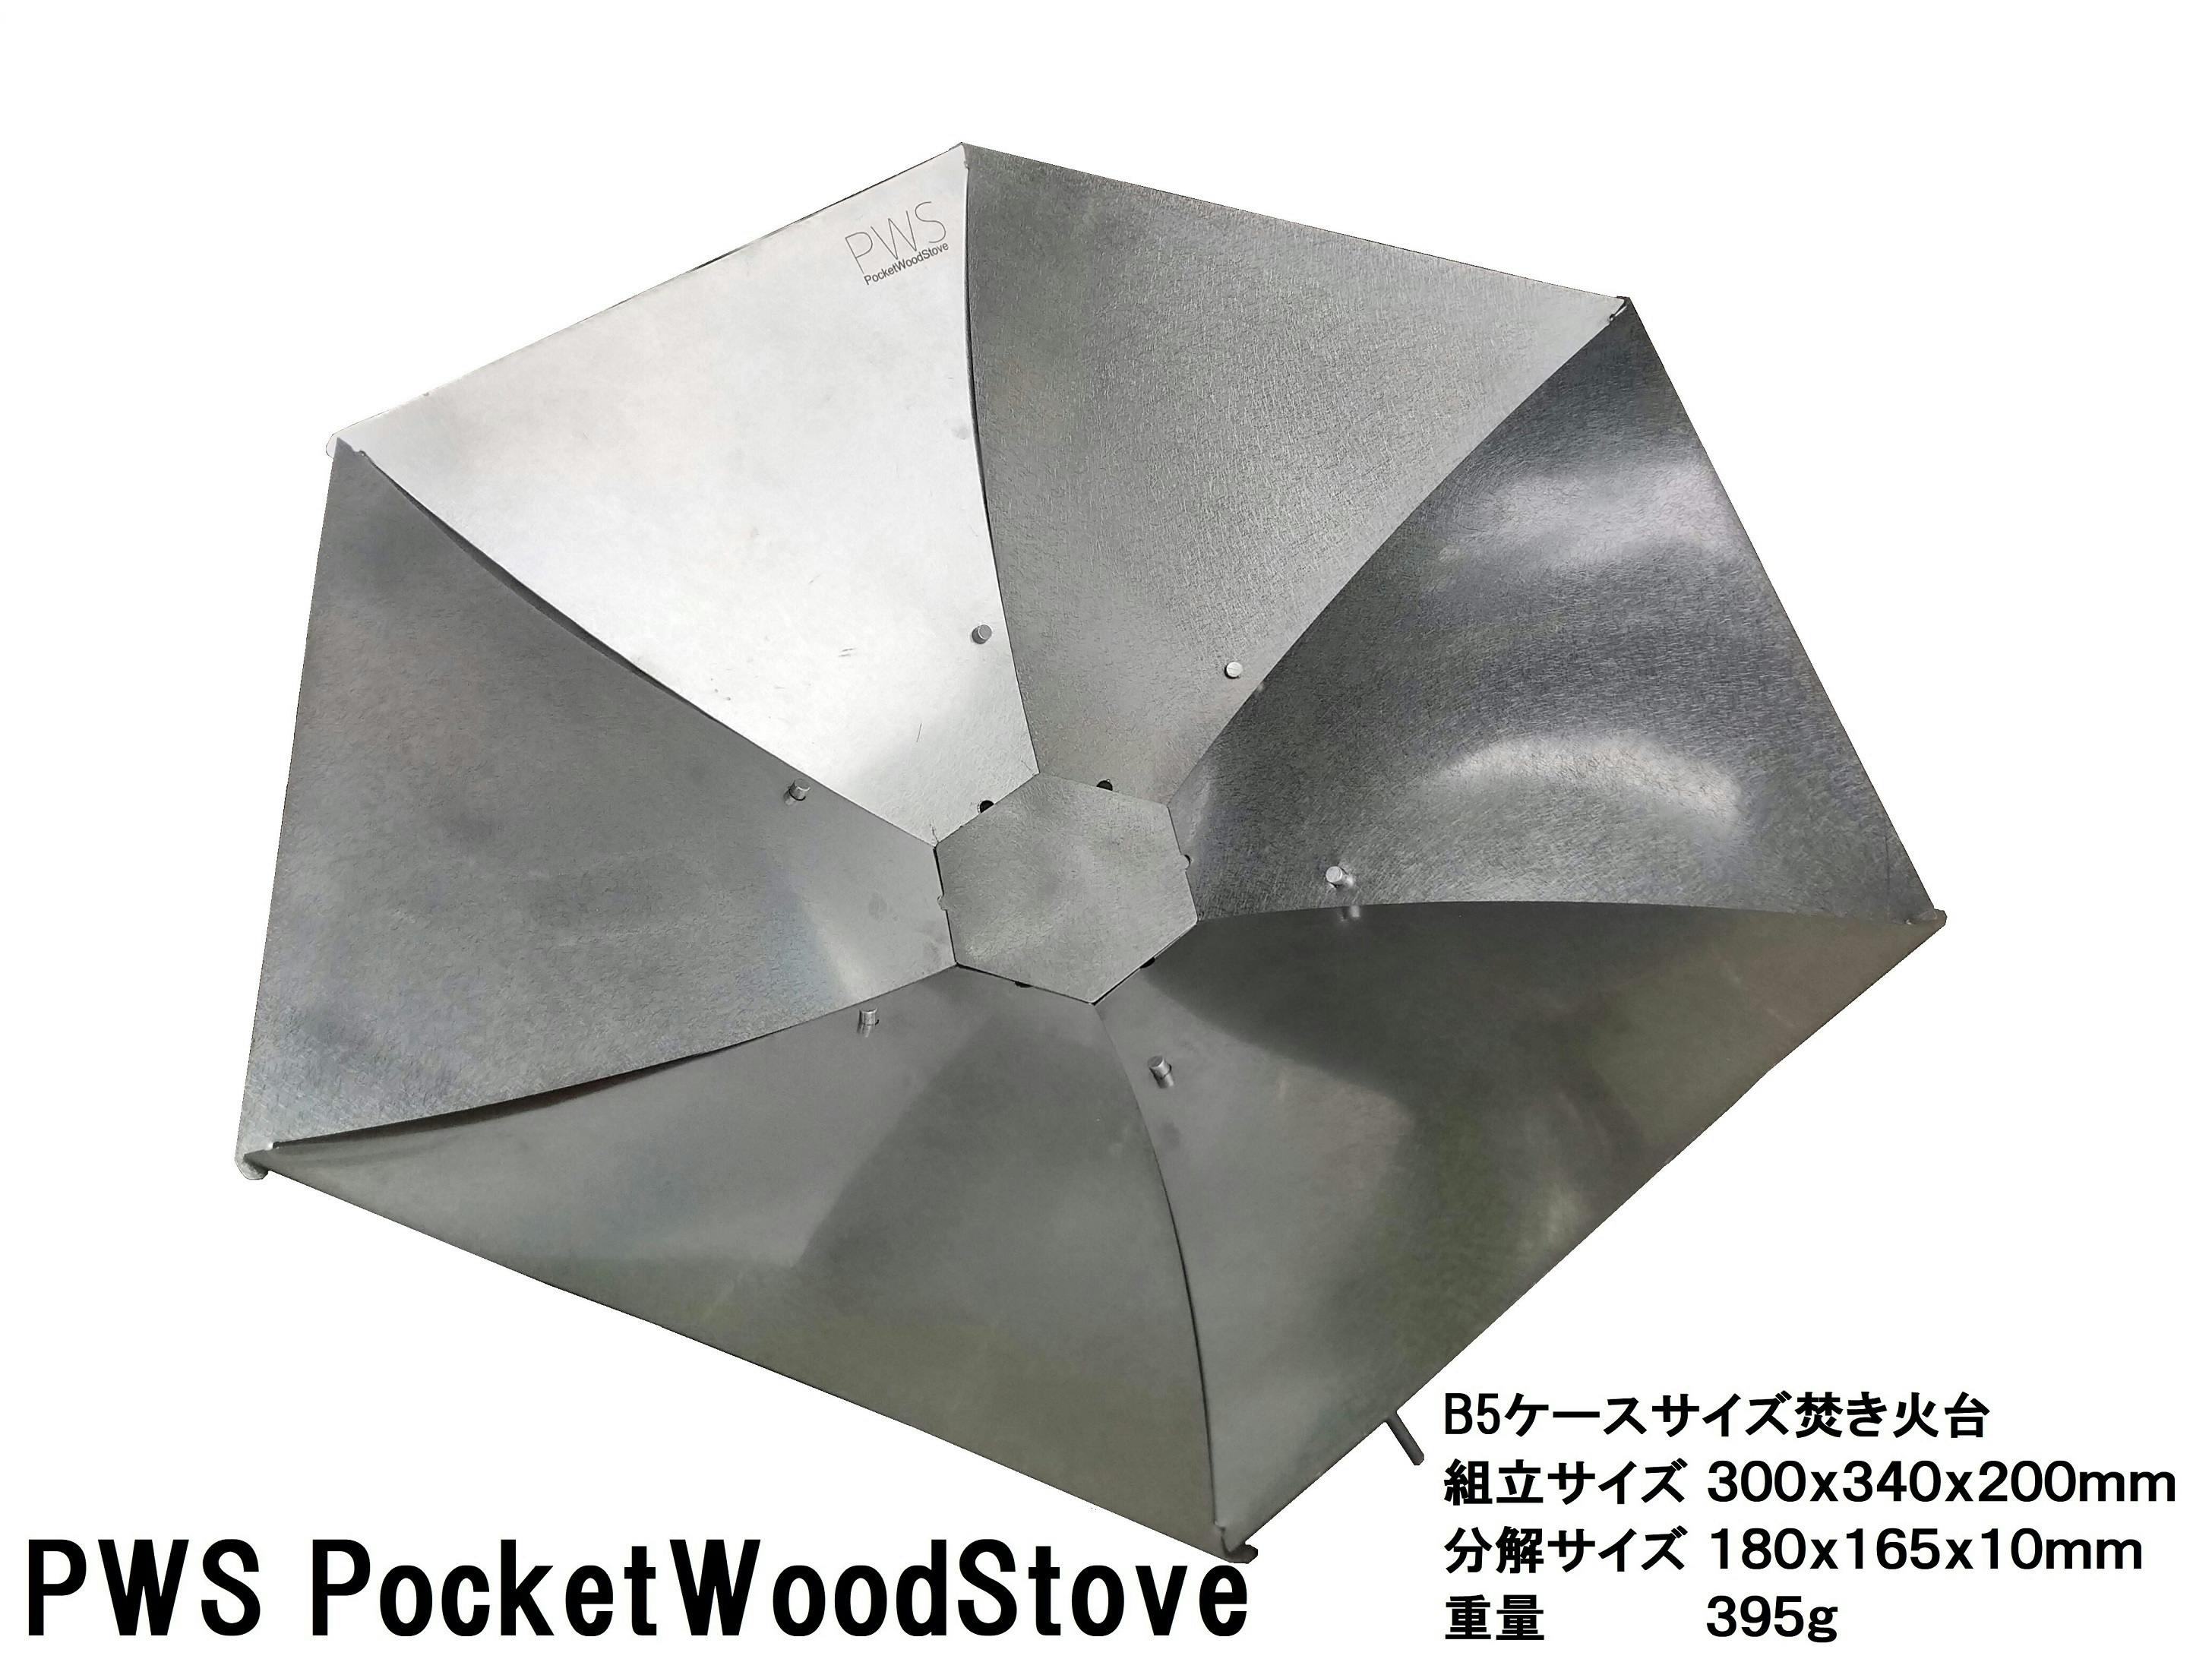 即納再入荷PWS PocketWoodStove B5ケースサイズ焚き火台 バーベキュー・調理用品